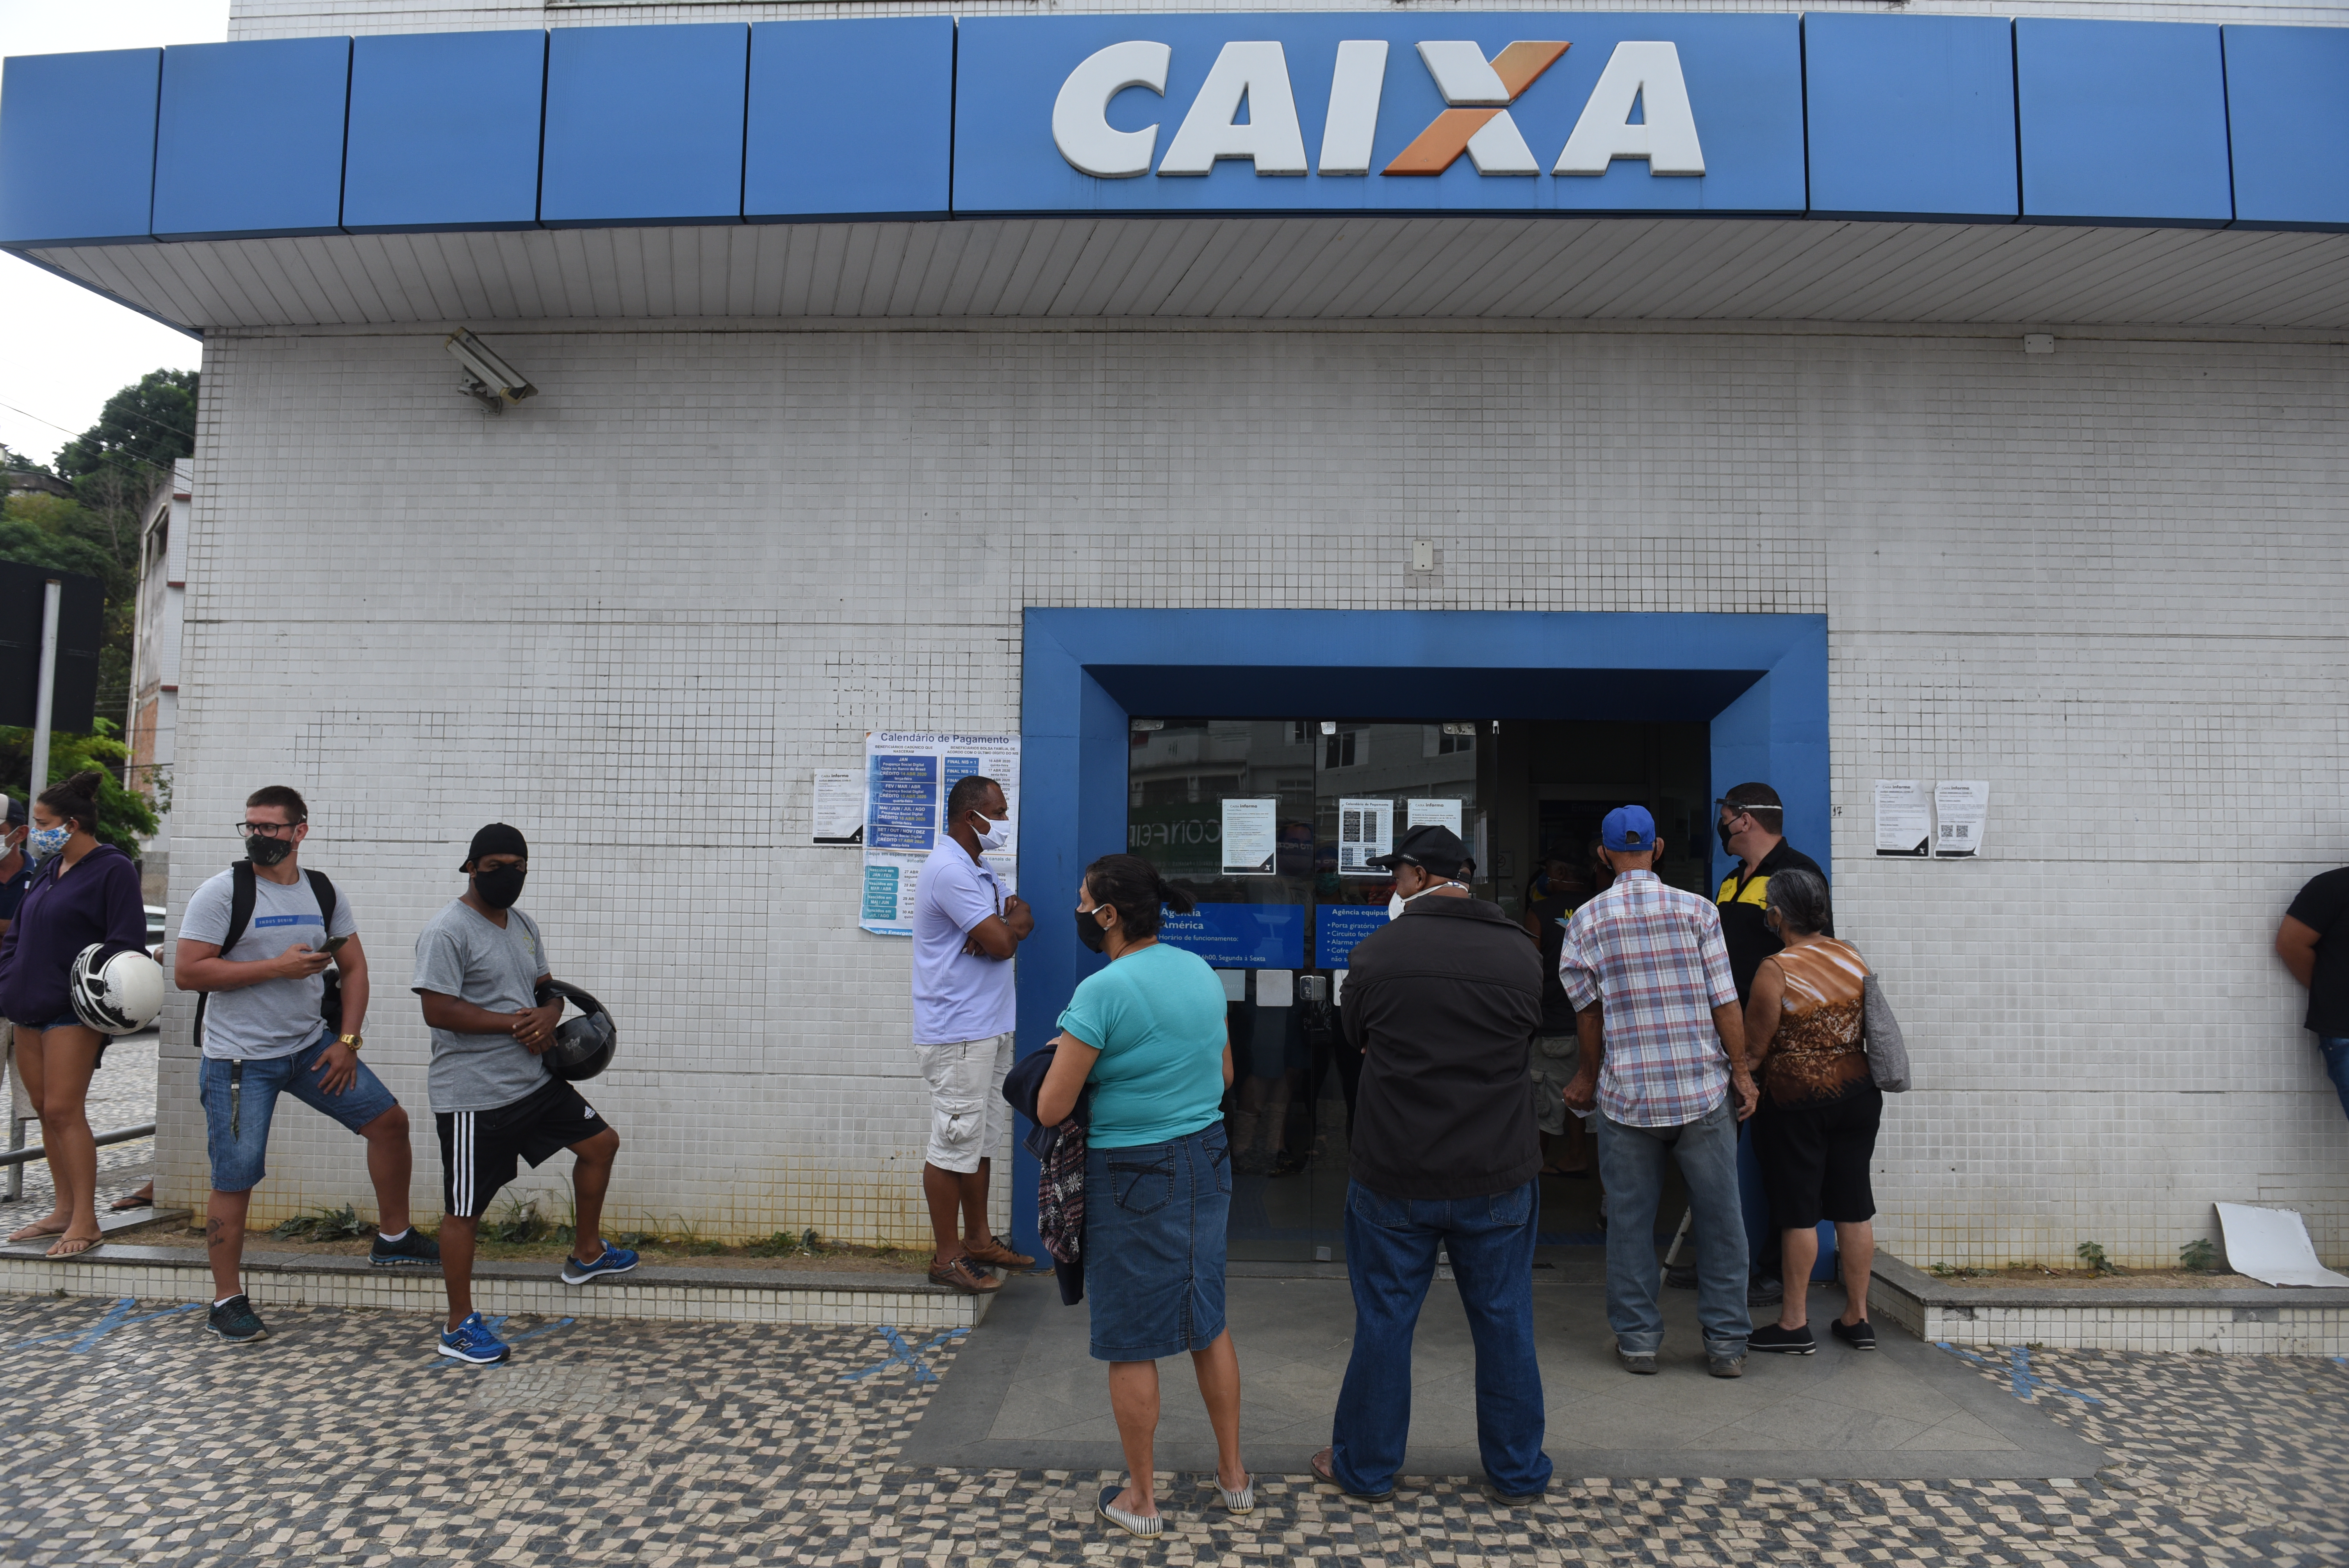 Data: 07/05/2020 - Vila Velha - Pessoas na fila da Caixa, em Jardim América, Cariacica - Editoria: Cidades Foto: Ricardo Medeiros - GZ